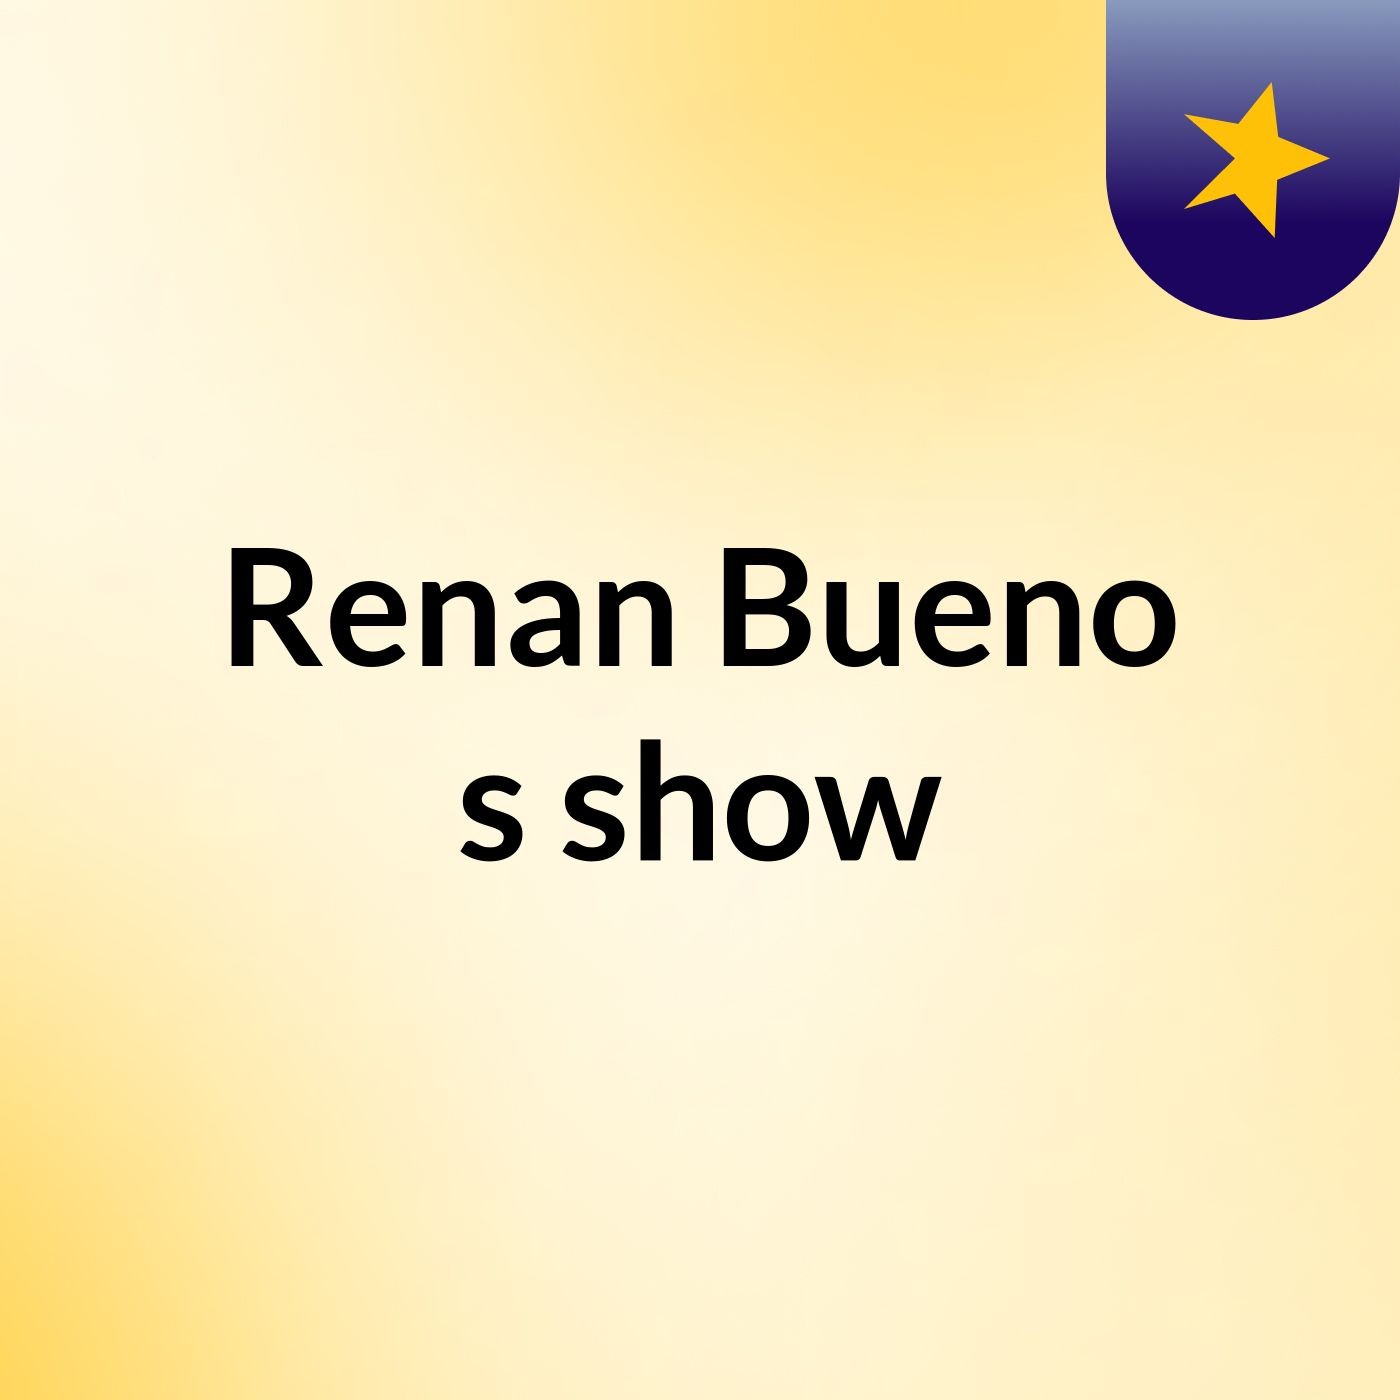 Renan Bueno's show